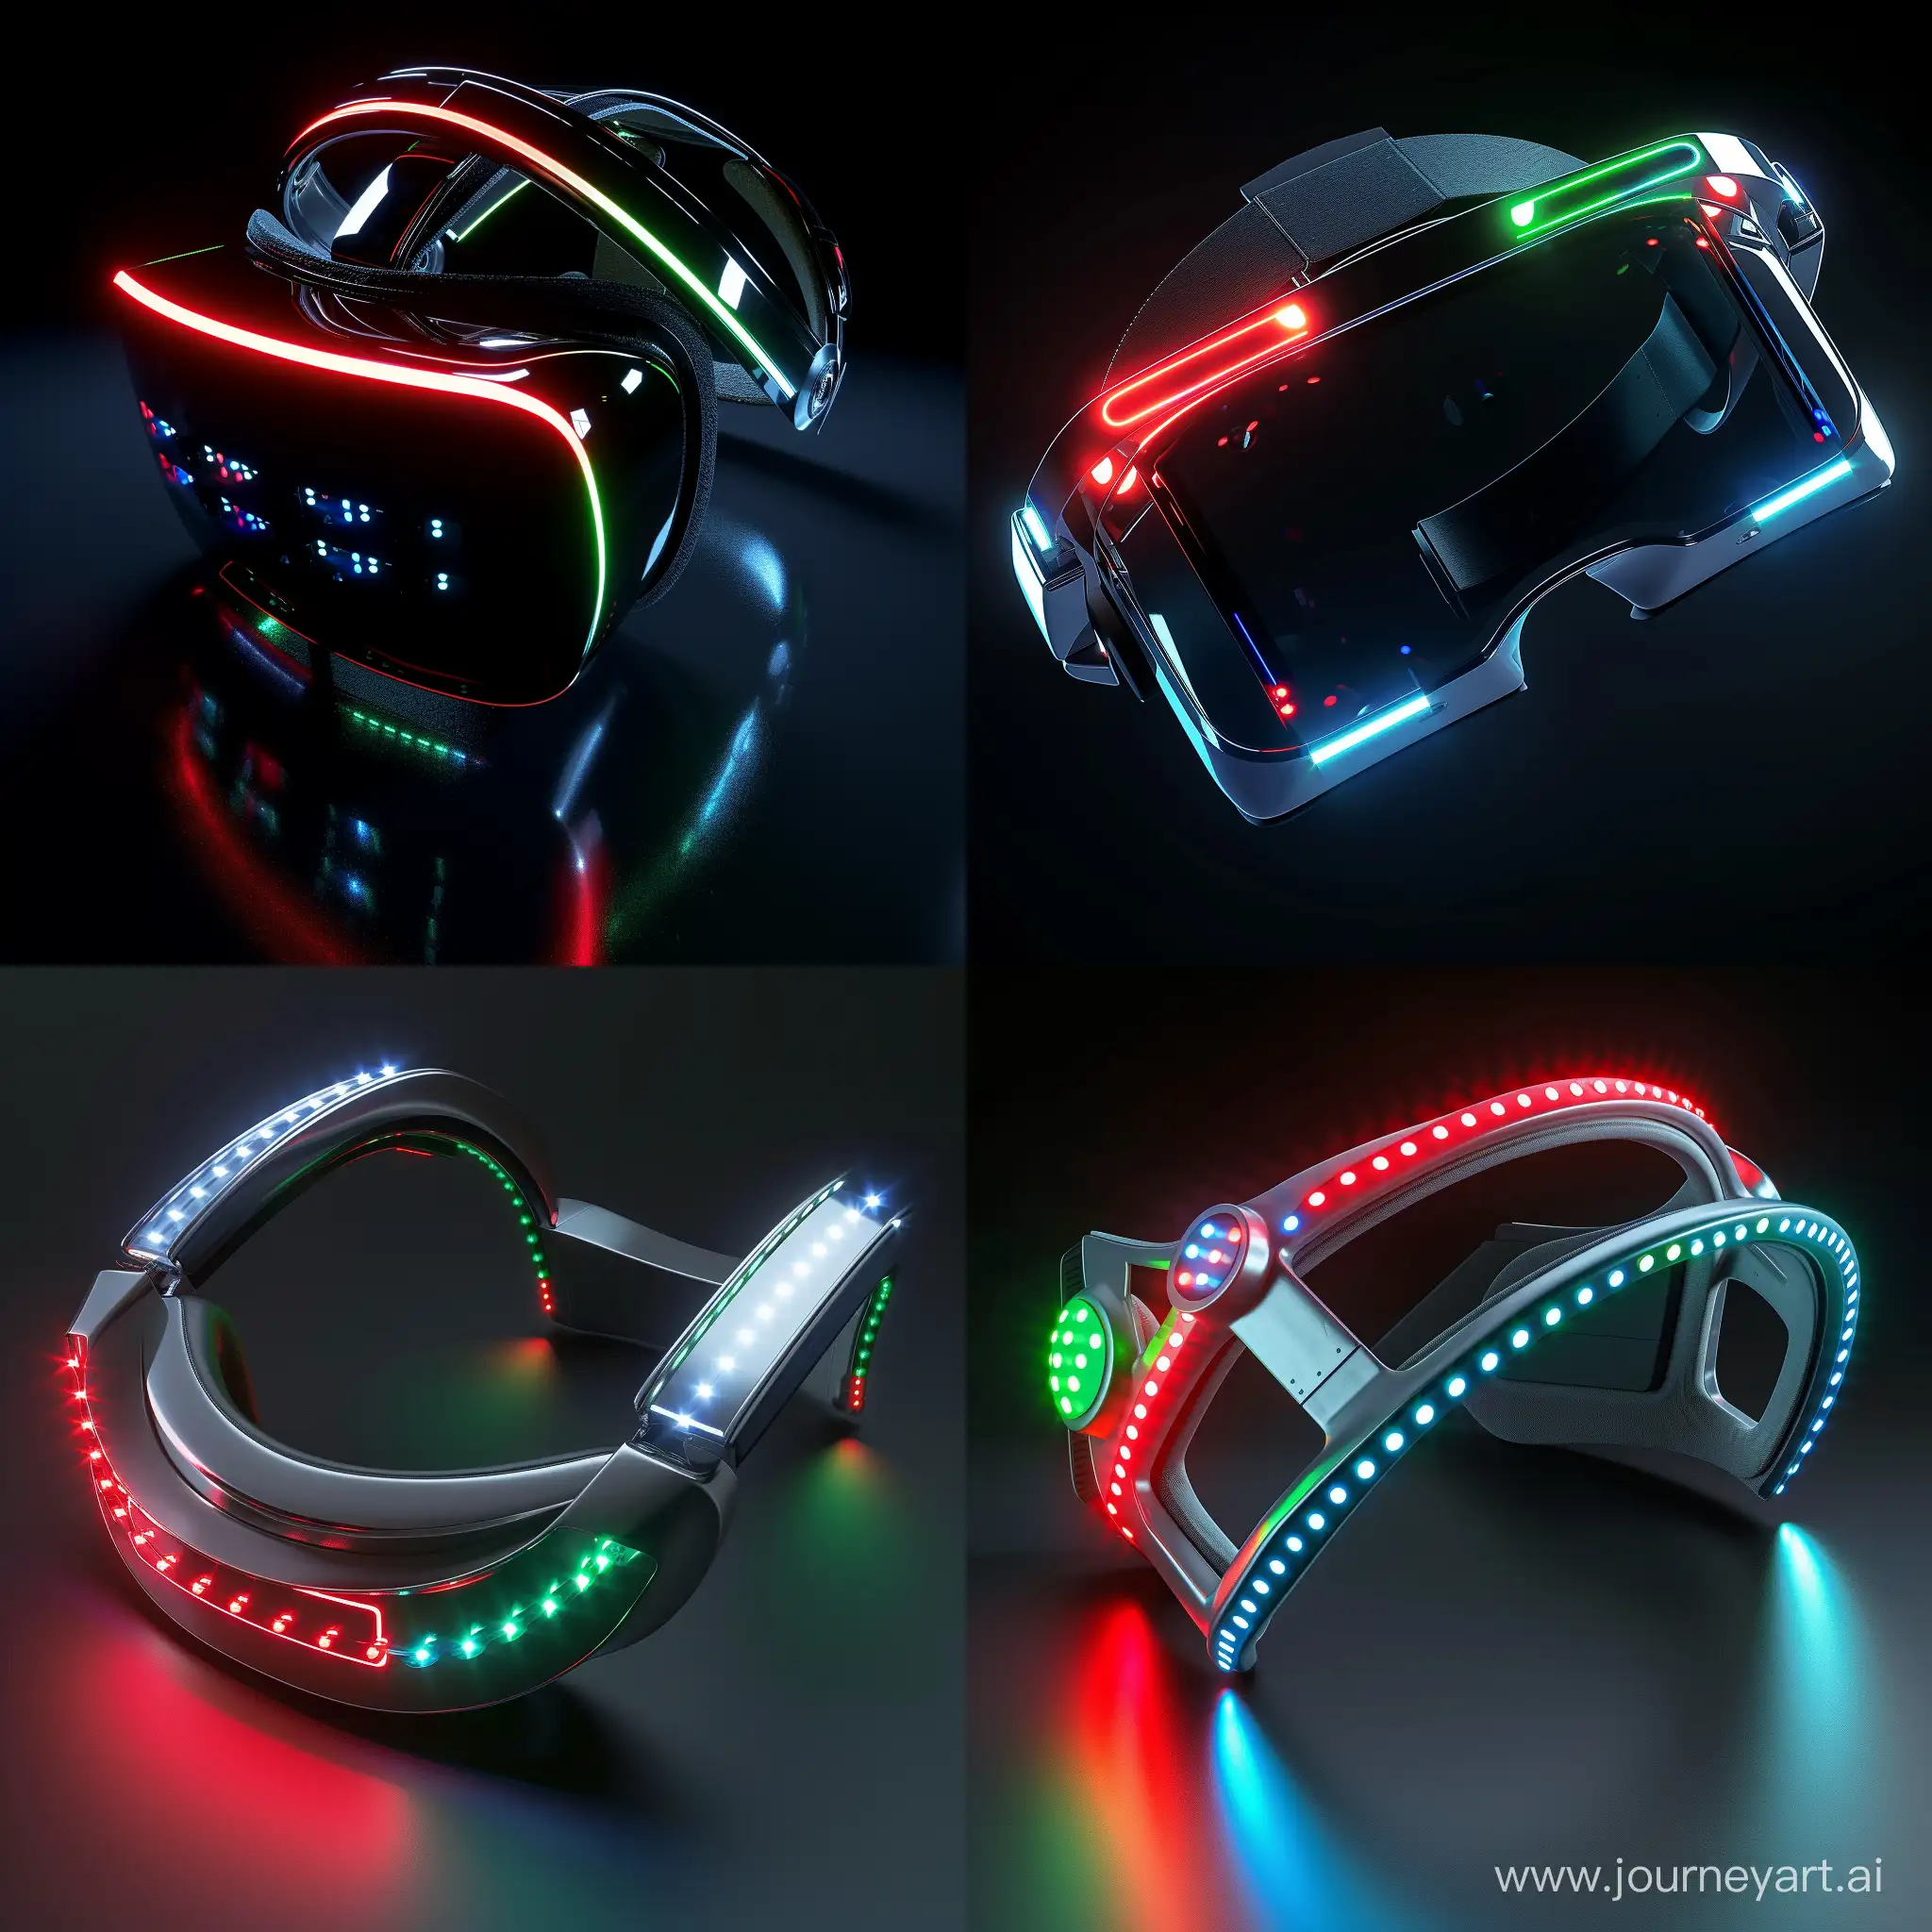 Futuristic VR headset, octane render, red PeLEDs, green PeLEDs, blue PeLEDs